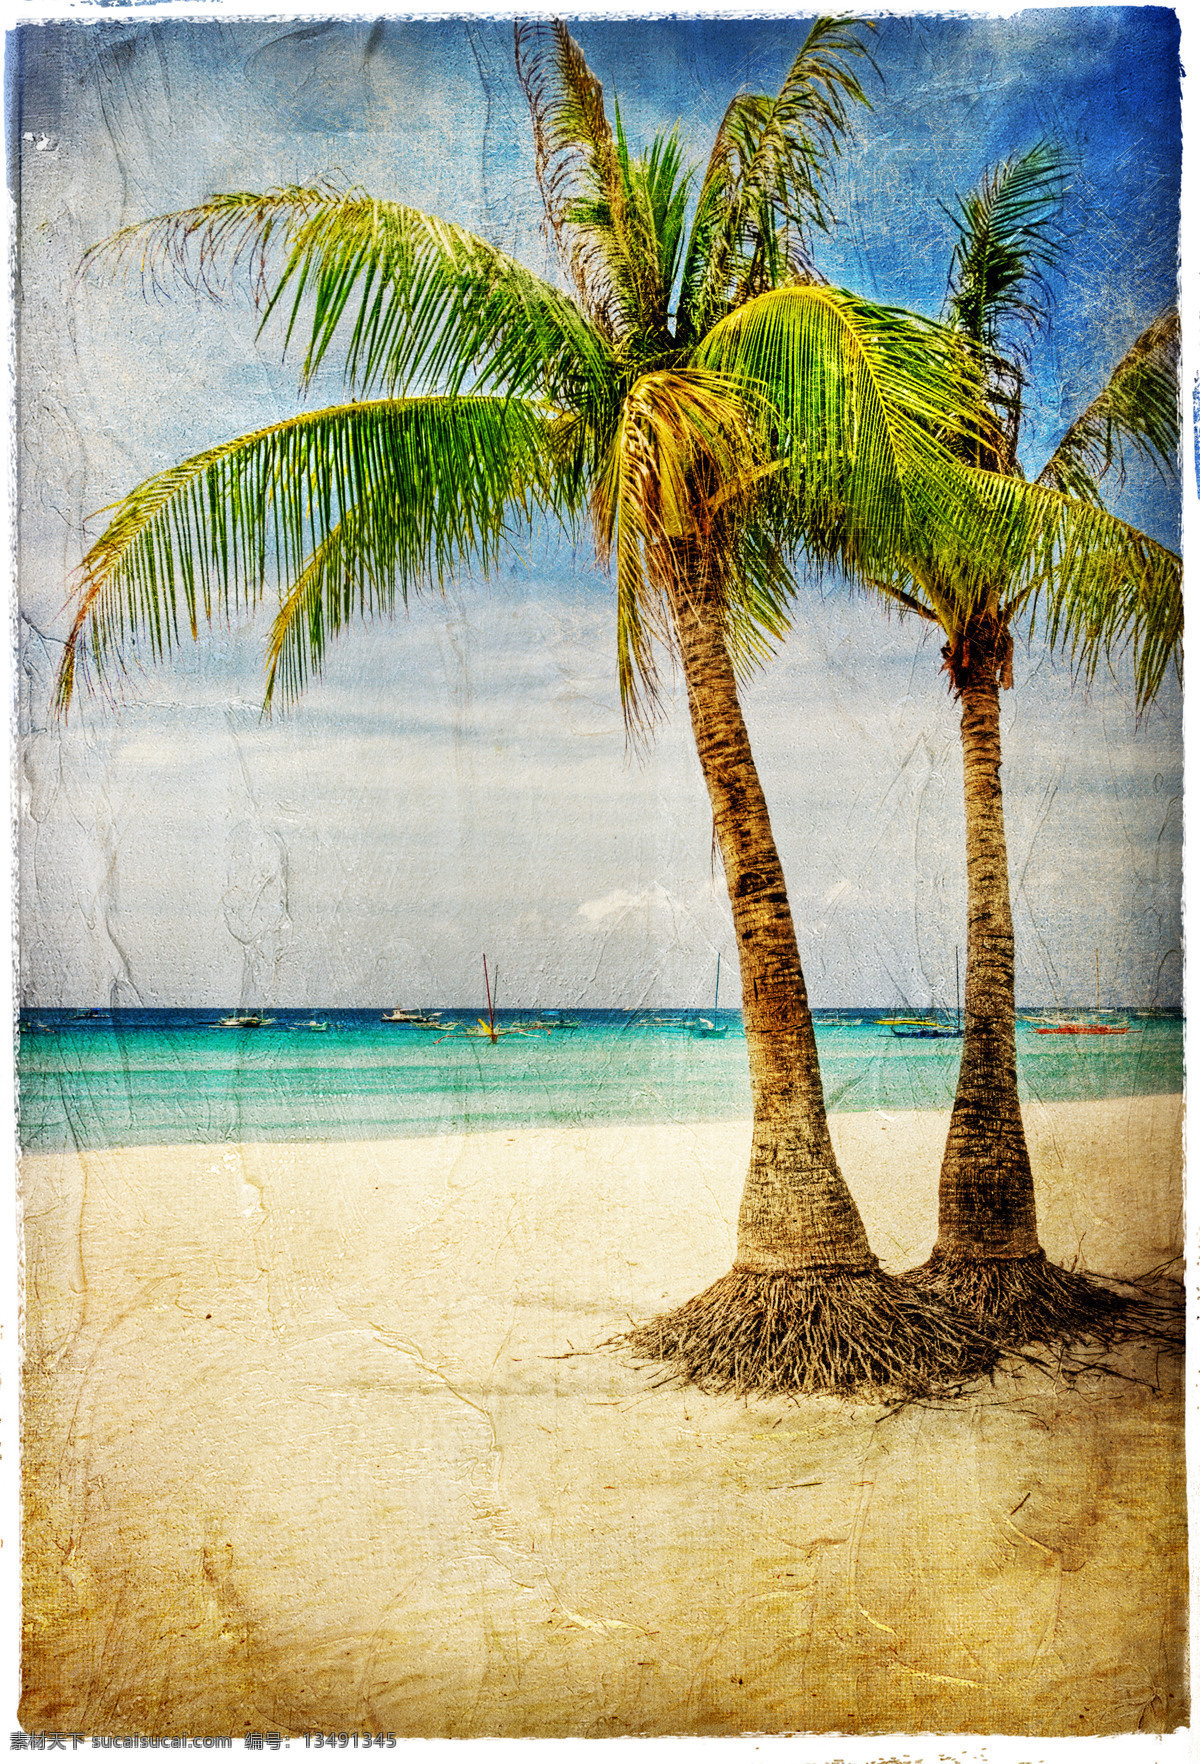 复古照片风景 椰子树 海边风景 沙滩 风景油画 复古艺术 文化艺术